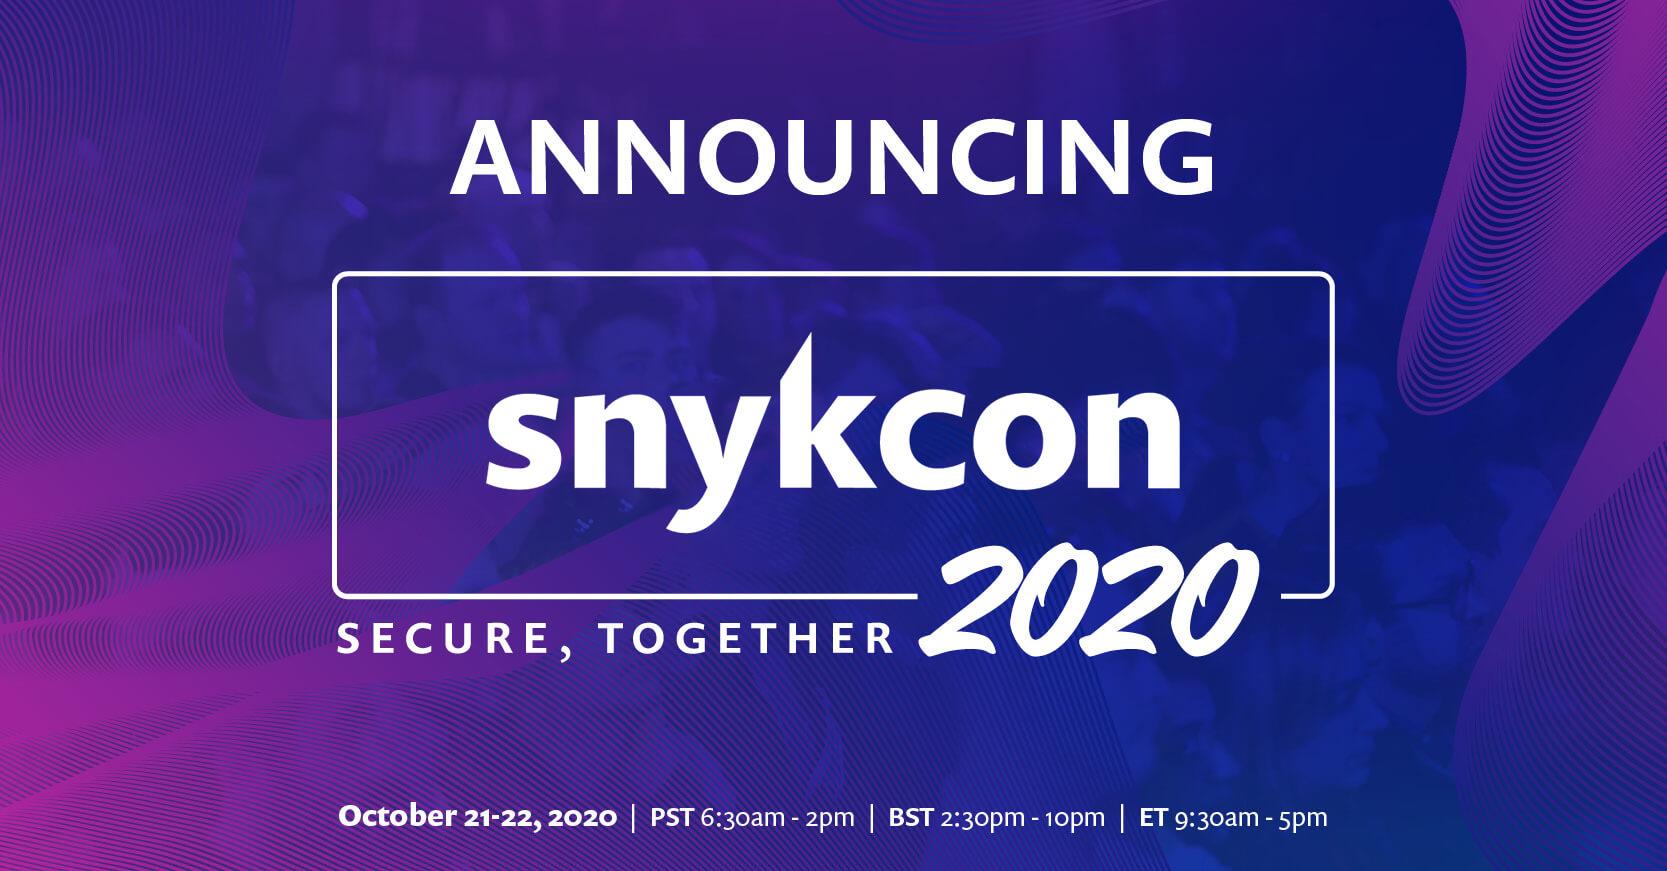 wordpress-sync/SnykCon_Social_1200x627_Announcing_SnykCon